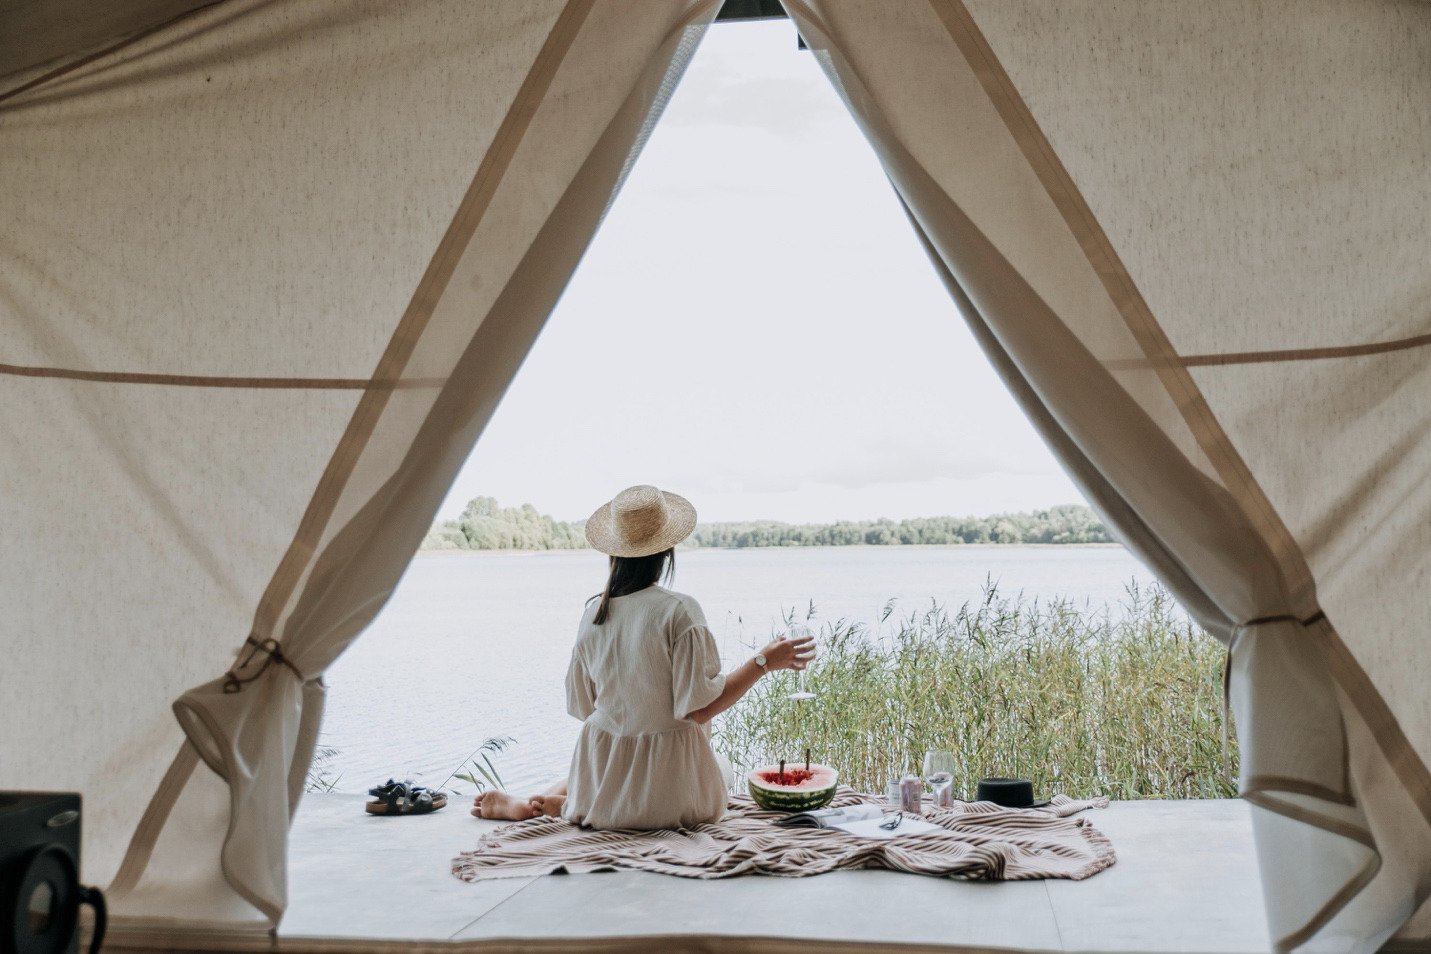 Camping woman